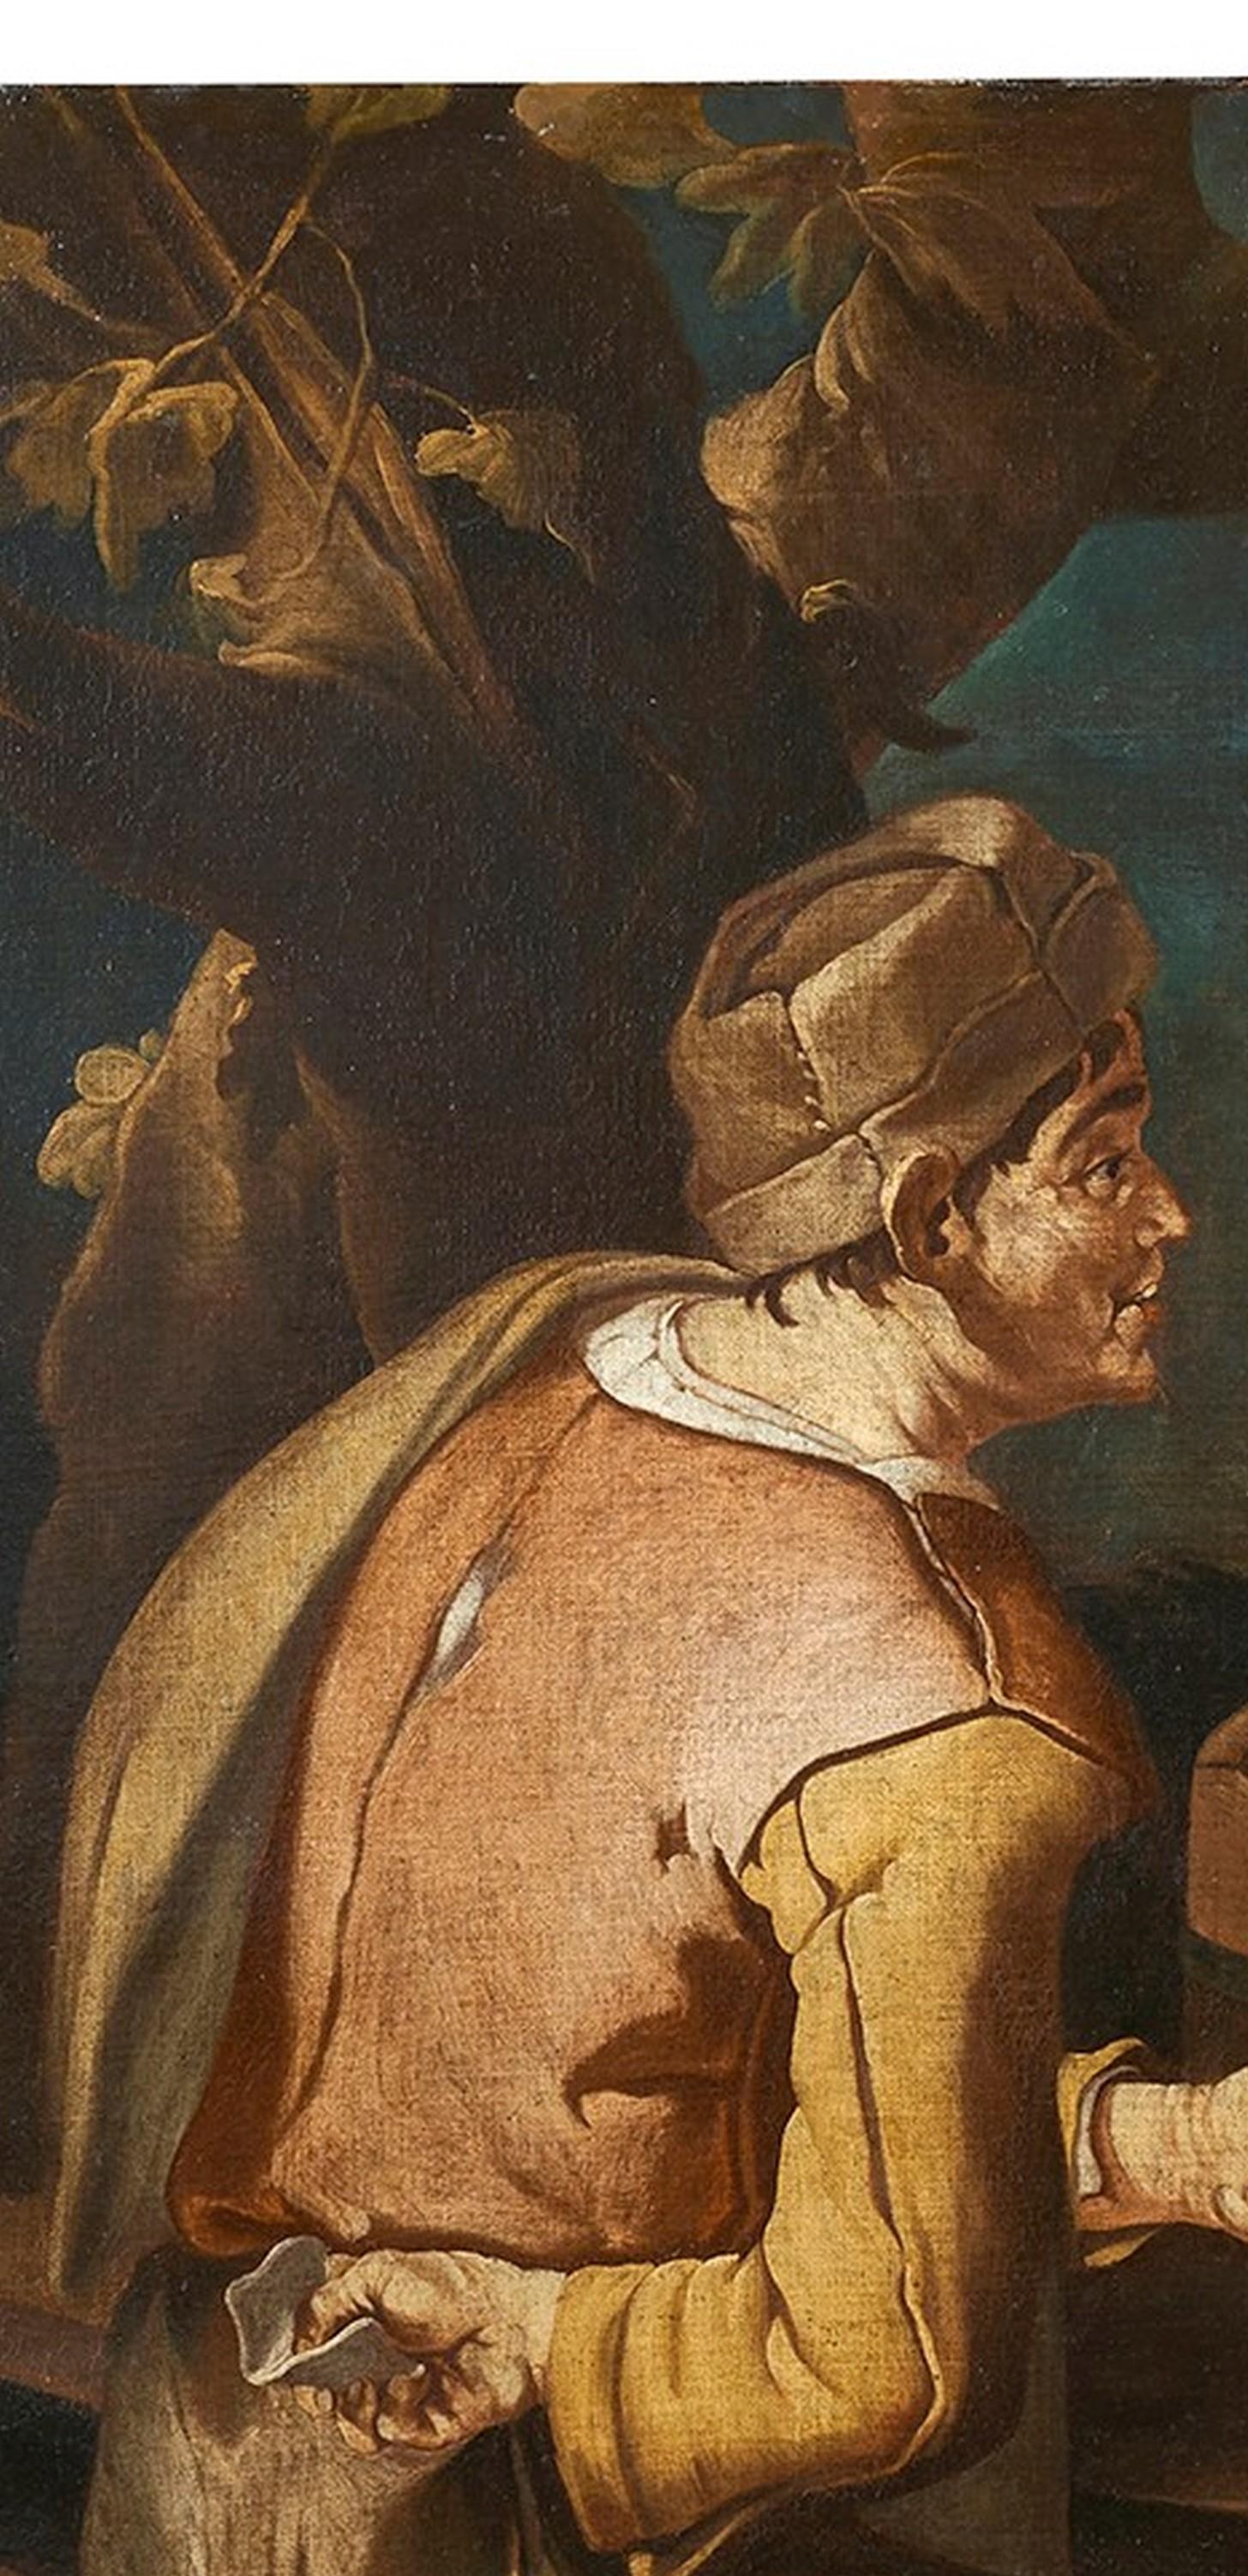 Oiled Scena di Genere, Todeschini 17th Century Oil on Canvas Genre Scene Painting For Sale